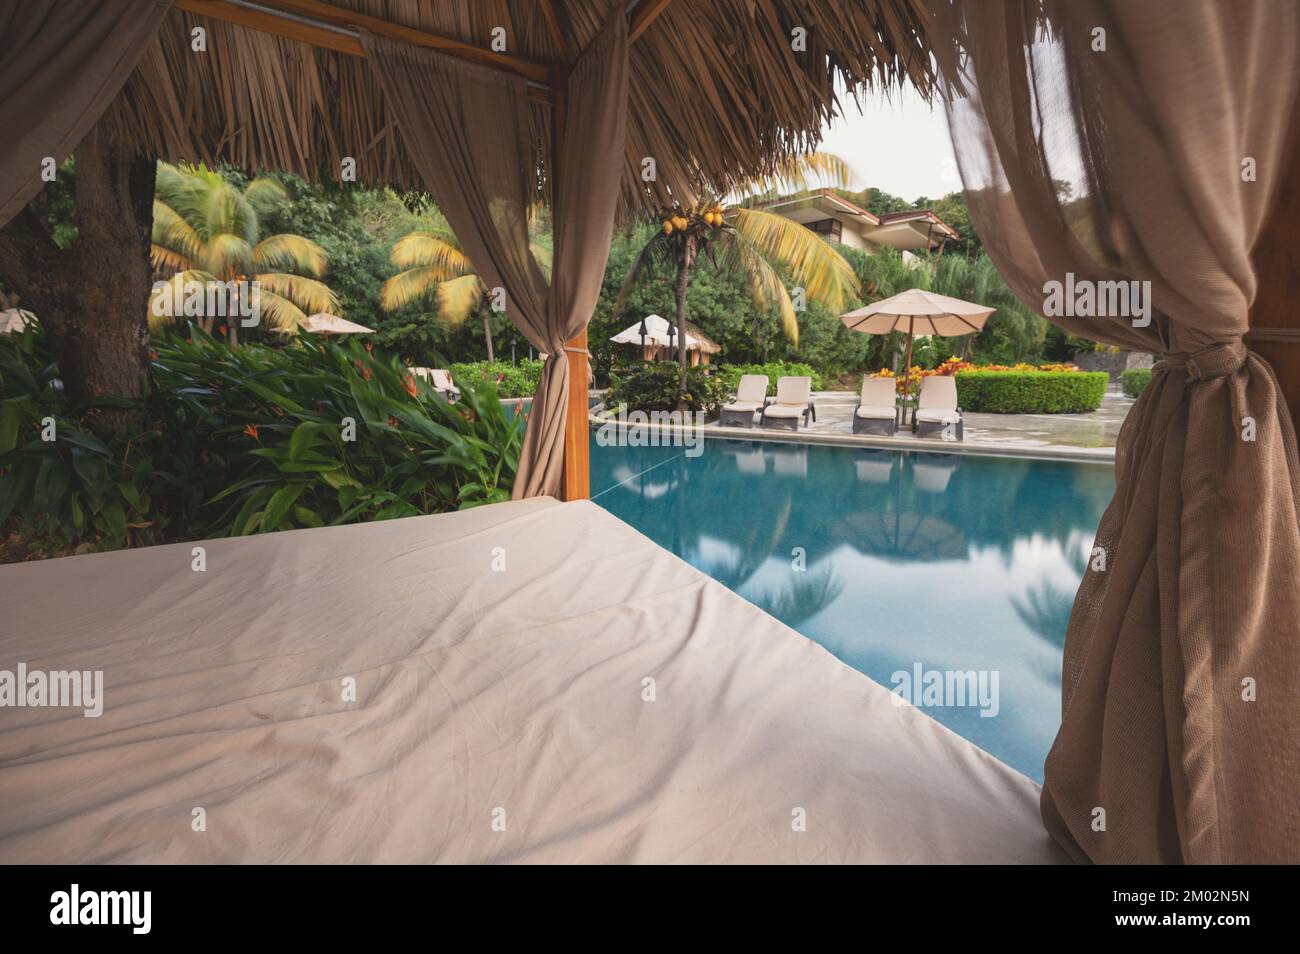 Leere Sonnenliege neben dem Pool im Hintergrund des Hotelresorts Stockfoto